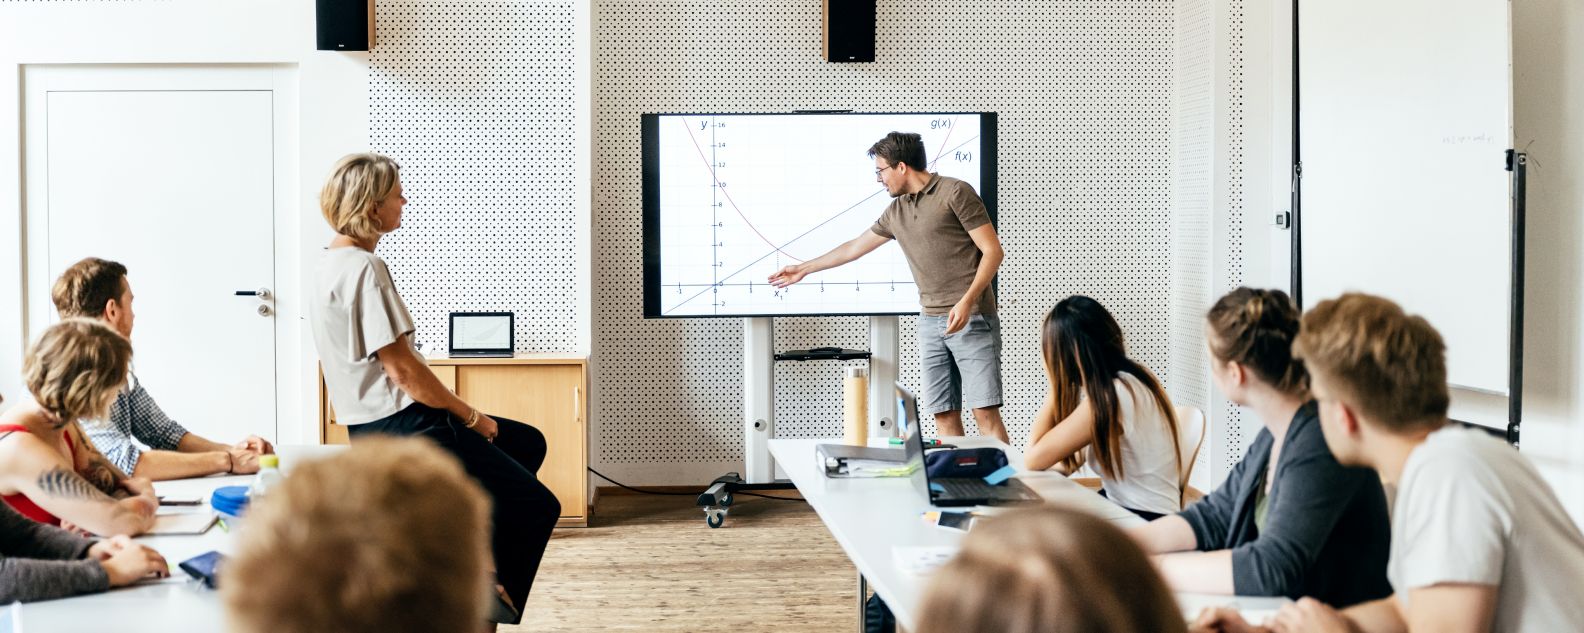 Um estudante fazendo uma apresentação para a classe durante uma sessão de seminário e utilizando um monitor grande como auxílio visual